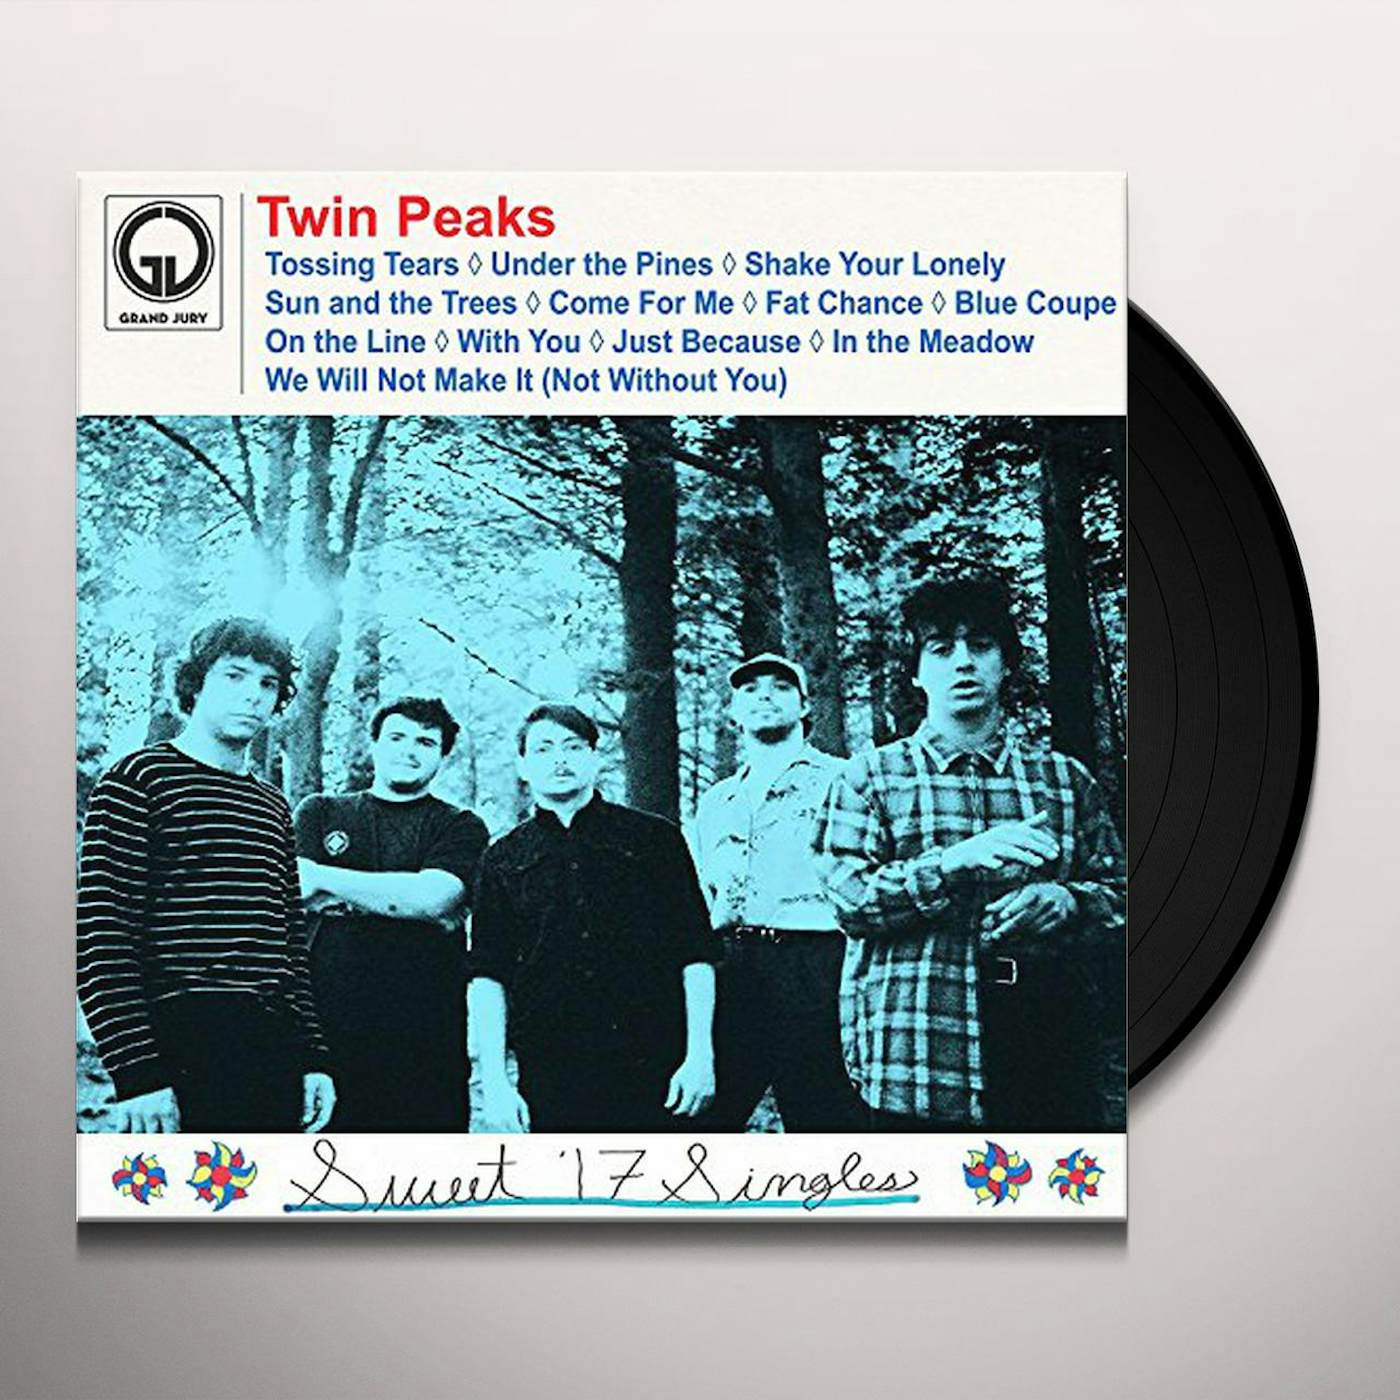 Twin Peaks SWEET 17 SINGLES Vinyl Record